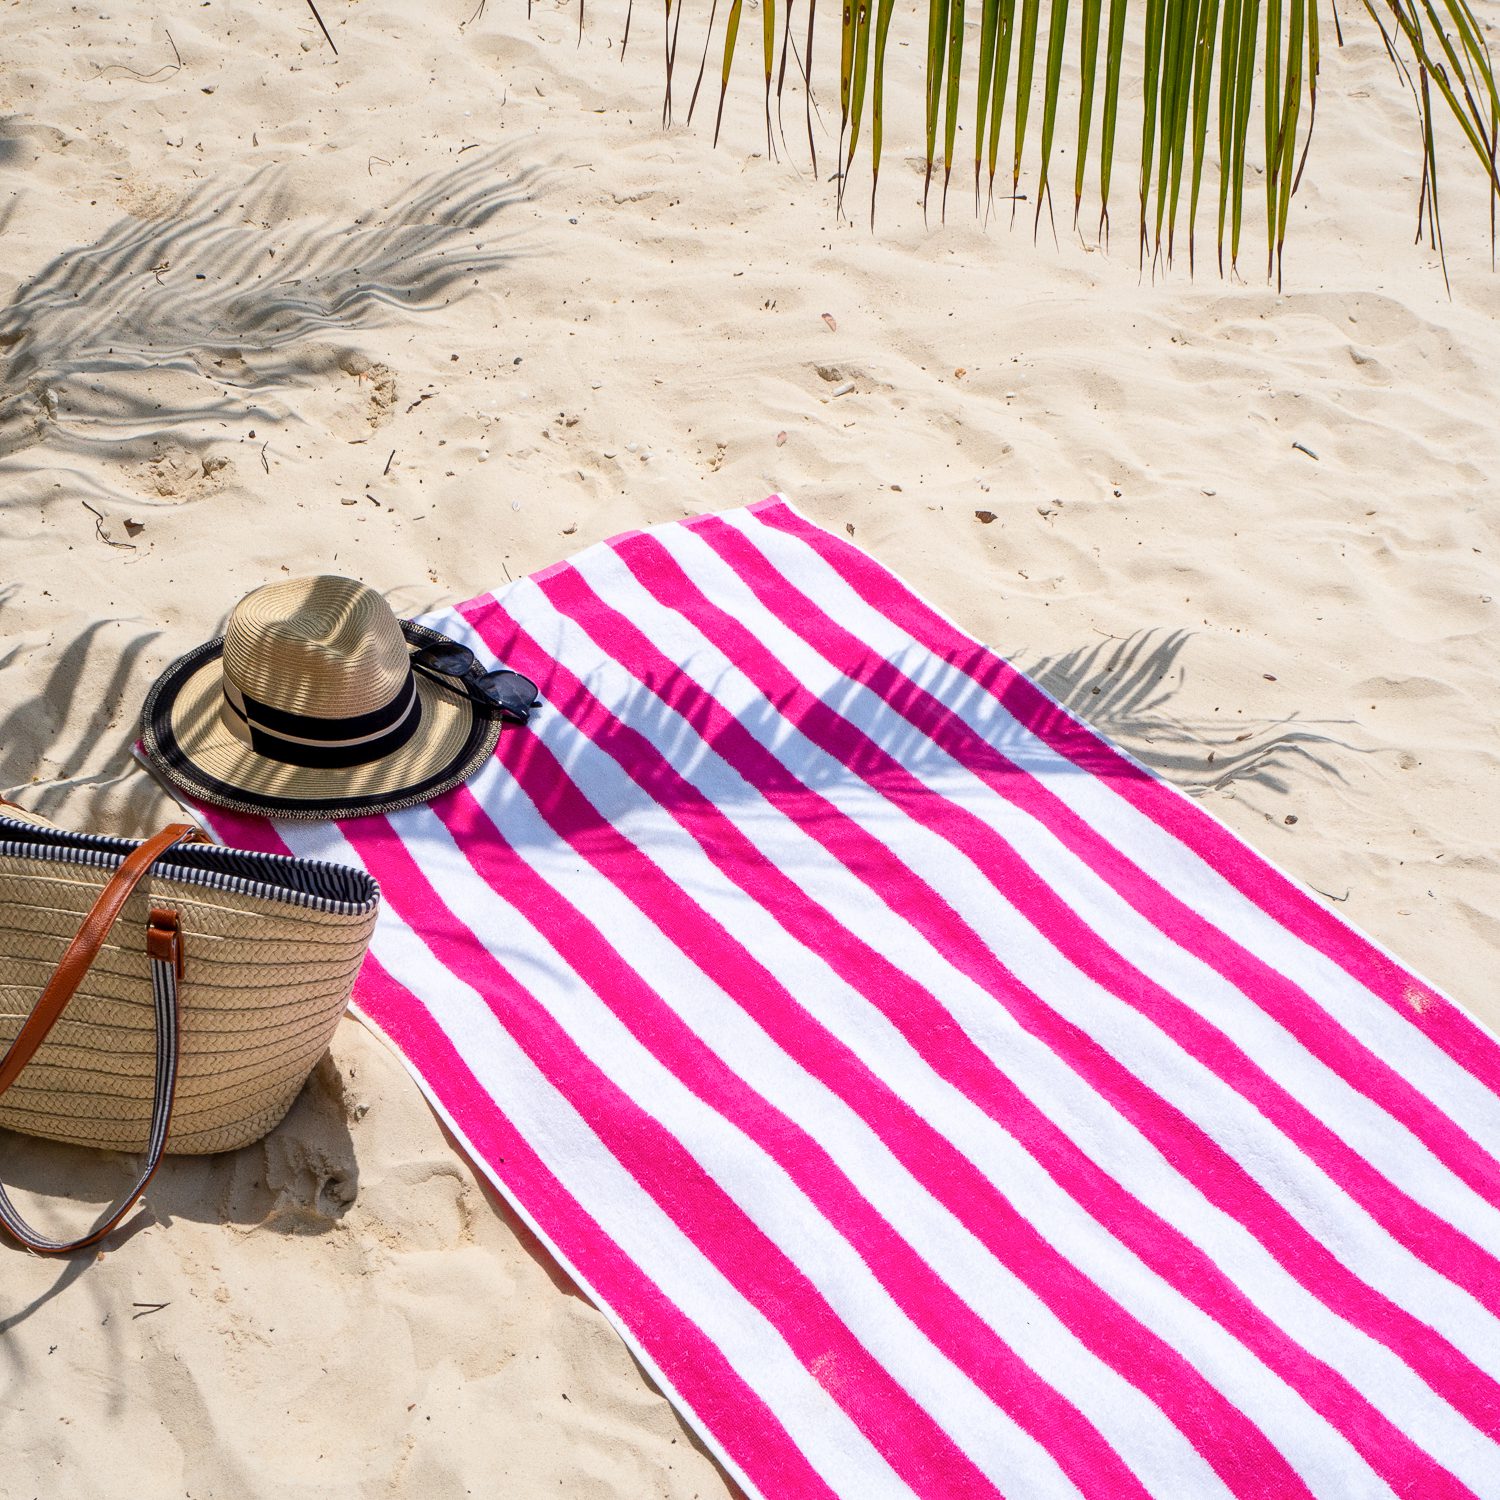 Pink Cabana Beach Towel on sandy beach